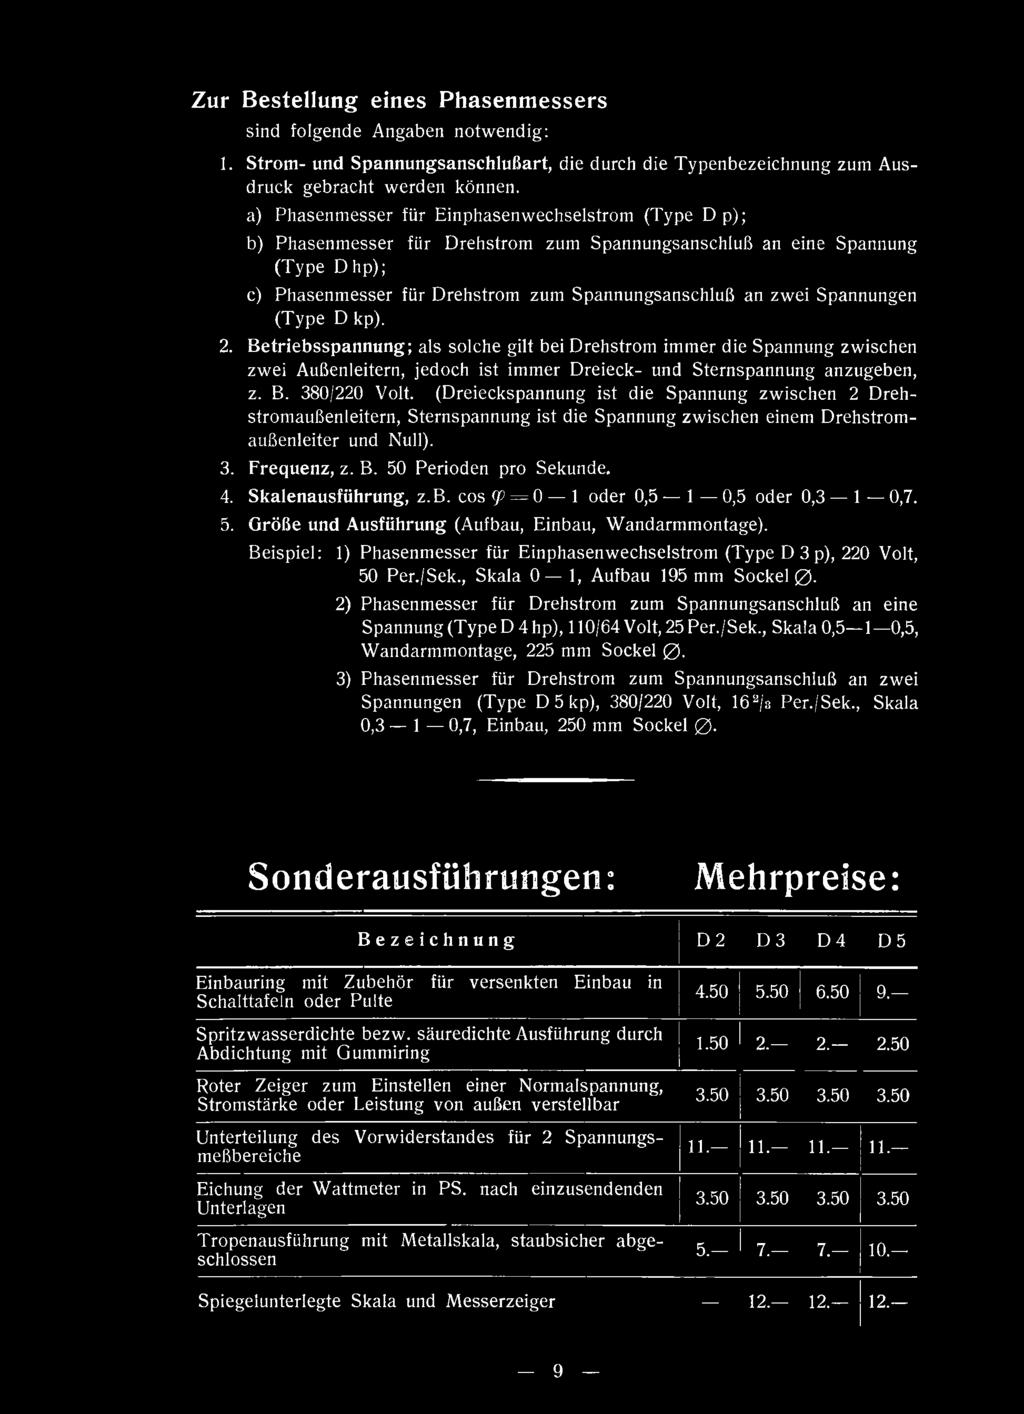 phasenmesser für Drehstrom zum Spannungsanschluß an zwei Spannungen (Type D kp). 2.